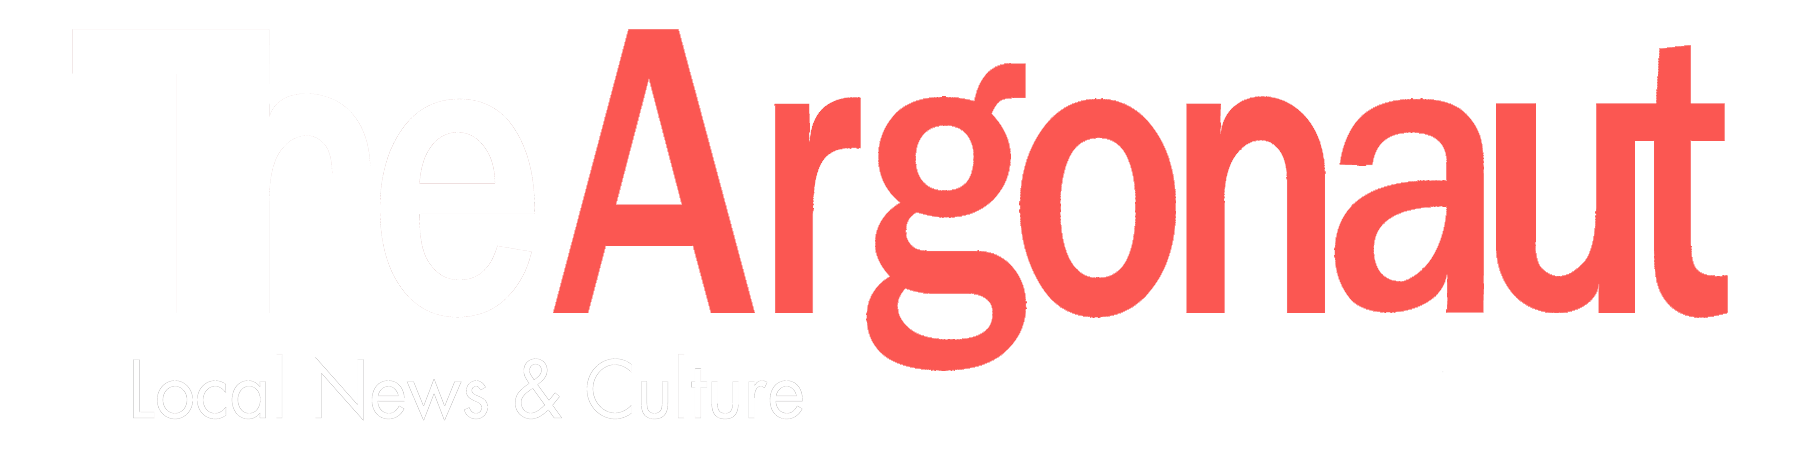 Argonaut Logo - Local News & Culture for: Marina del Rey, Venice, Santa Monica ...